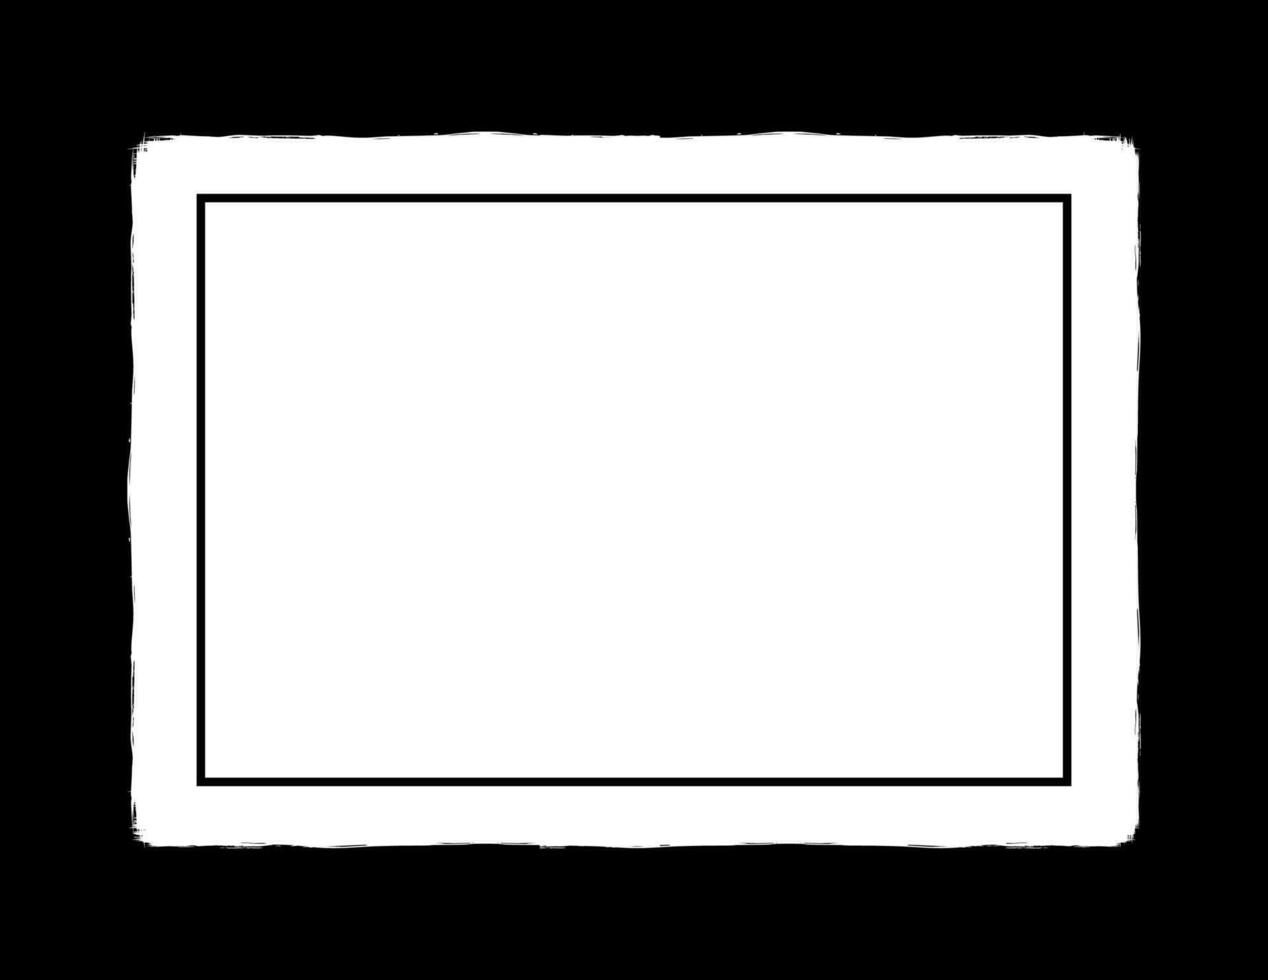 artistiek blanco ruimte met silhouet van de borstel beroerte of verf borstel, kan gebruik voor kader werk, advertentie, citaat, tekst, titel, omslag, lay-out, website, sjabloon of grafisch ontwerp element. vector